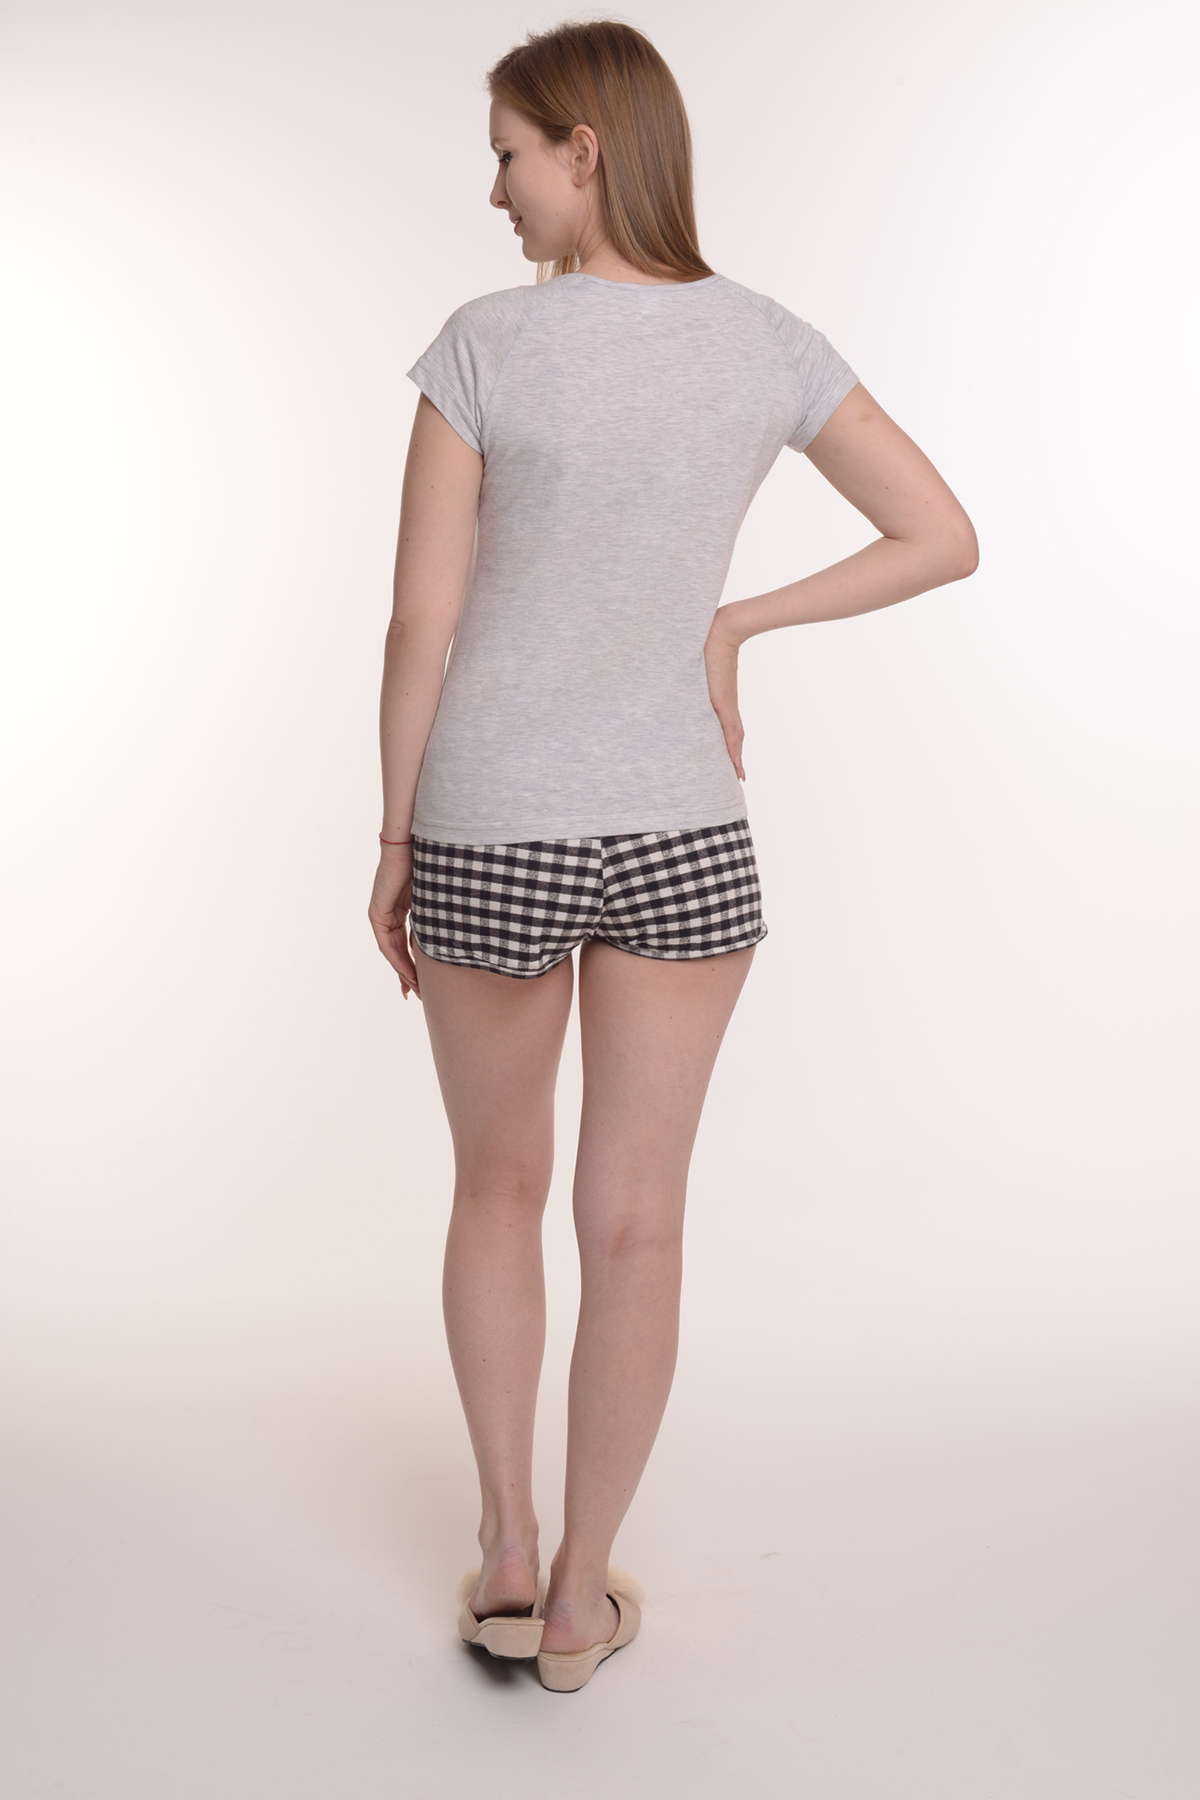 Жен. пижама с шортами арт. 23-0113 Серый р. 50 Моделлини, размер 50 - фото 3